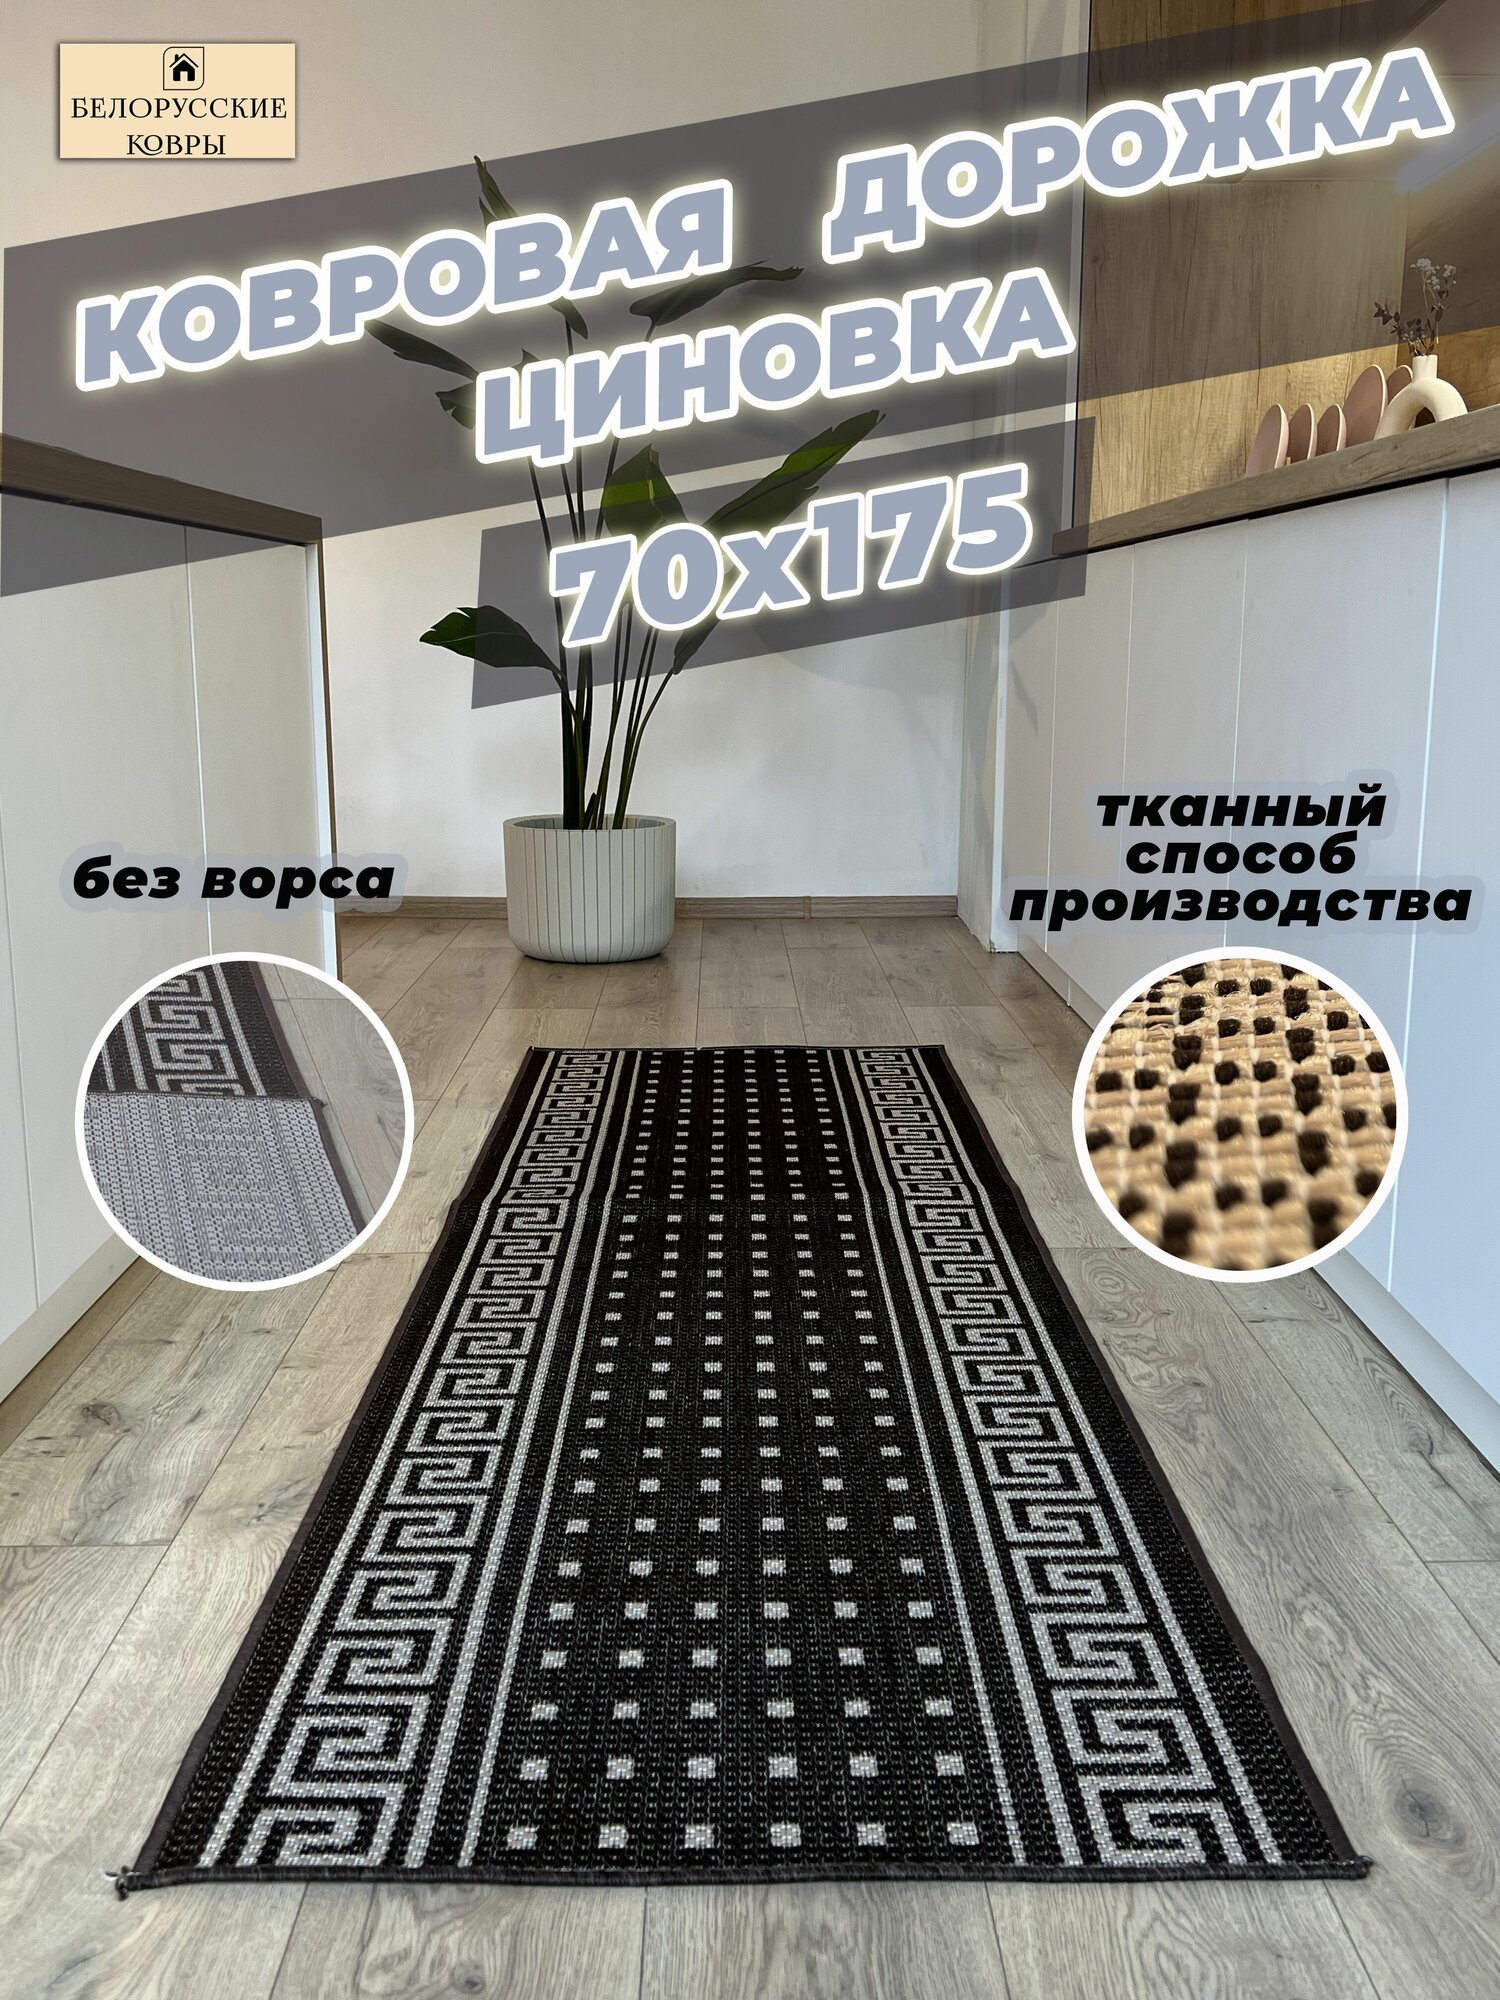 Белорусские ковры, ковровая дорожка циновка 70х175см./0,7х1,75м.